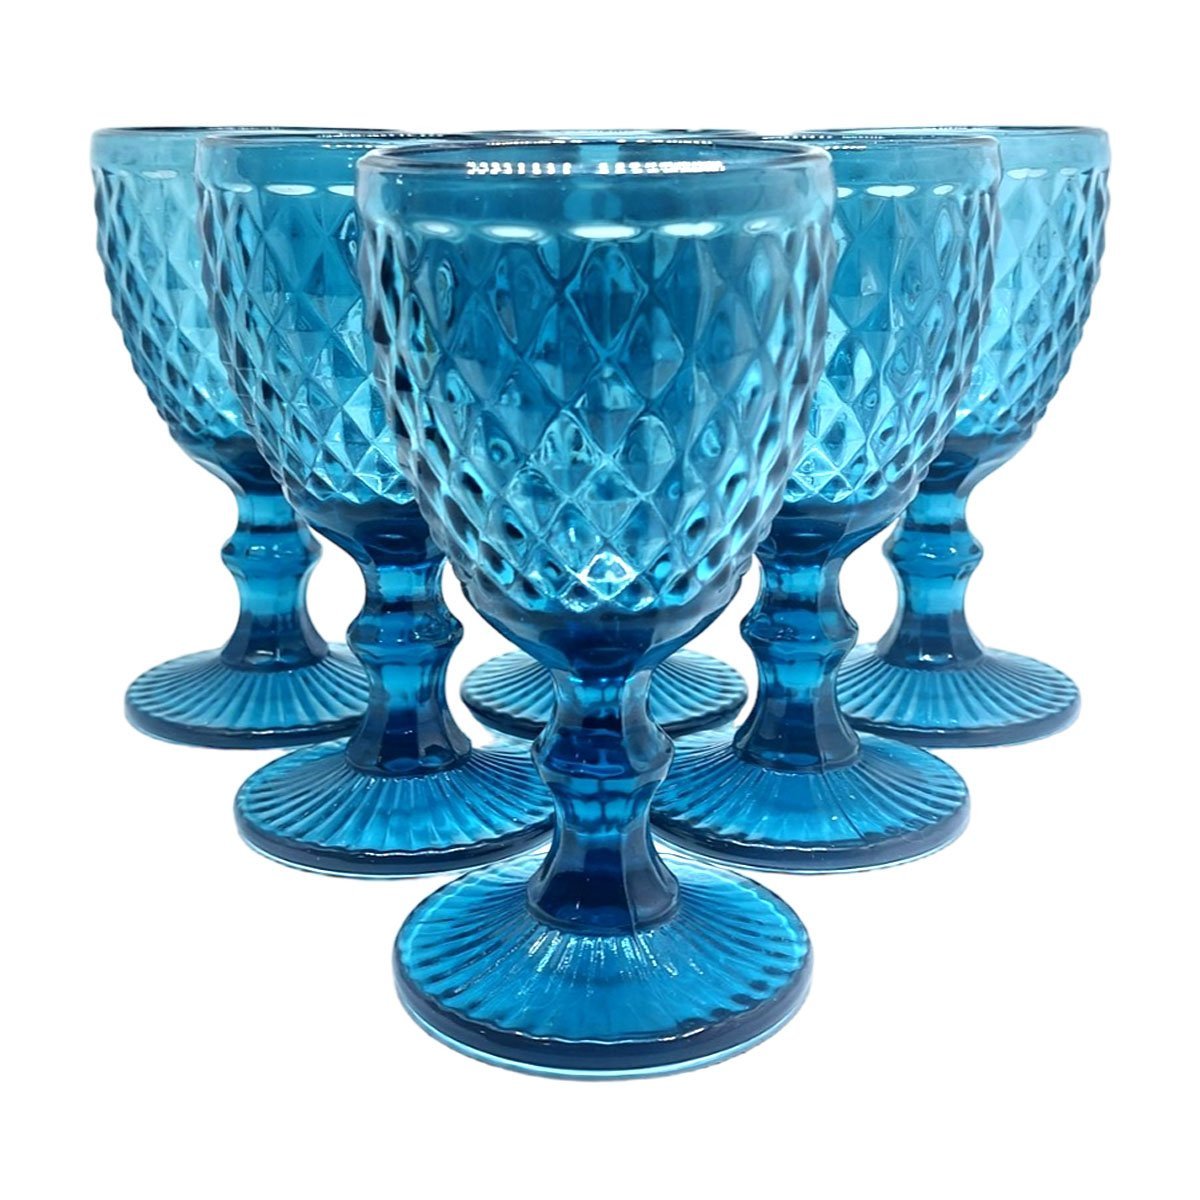 Jogo De Taças 6 Peças Vidro Color Vinho Água Bebidas 200ml Monaliza Glass Ware Taça Azul aço